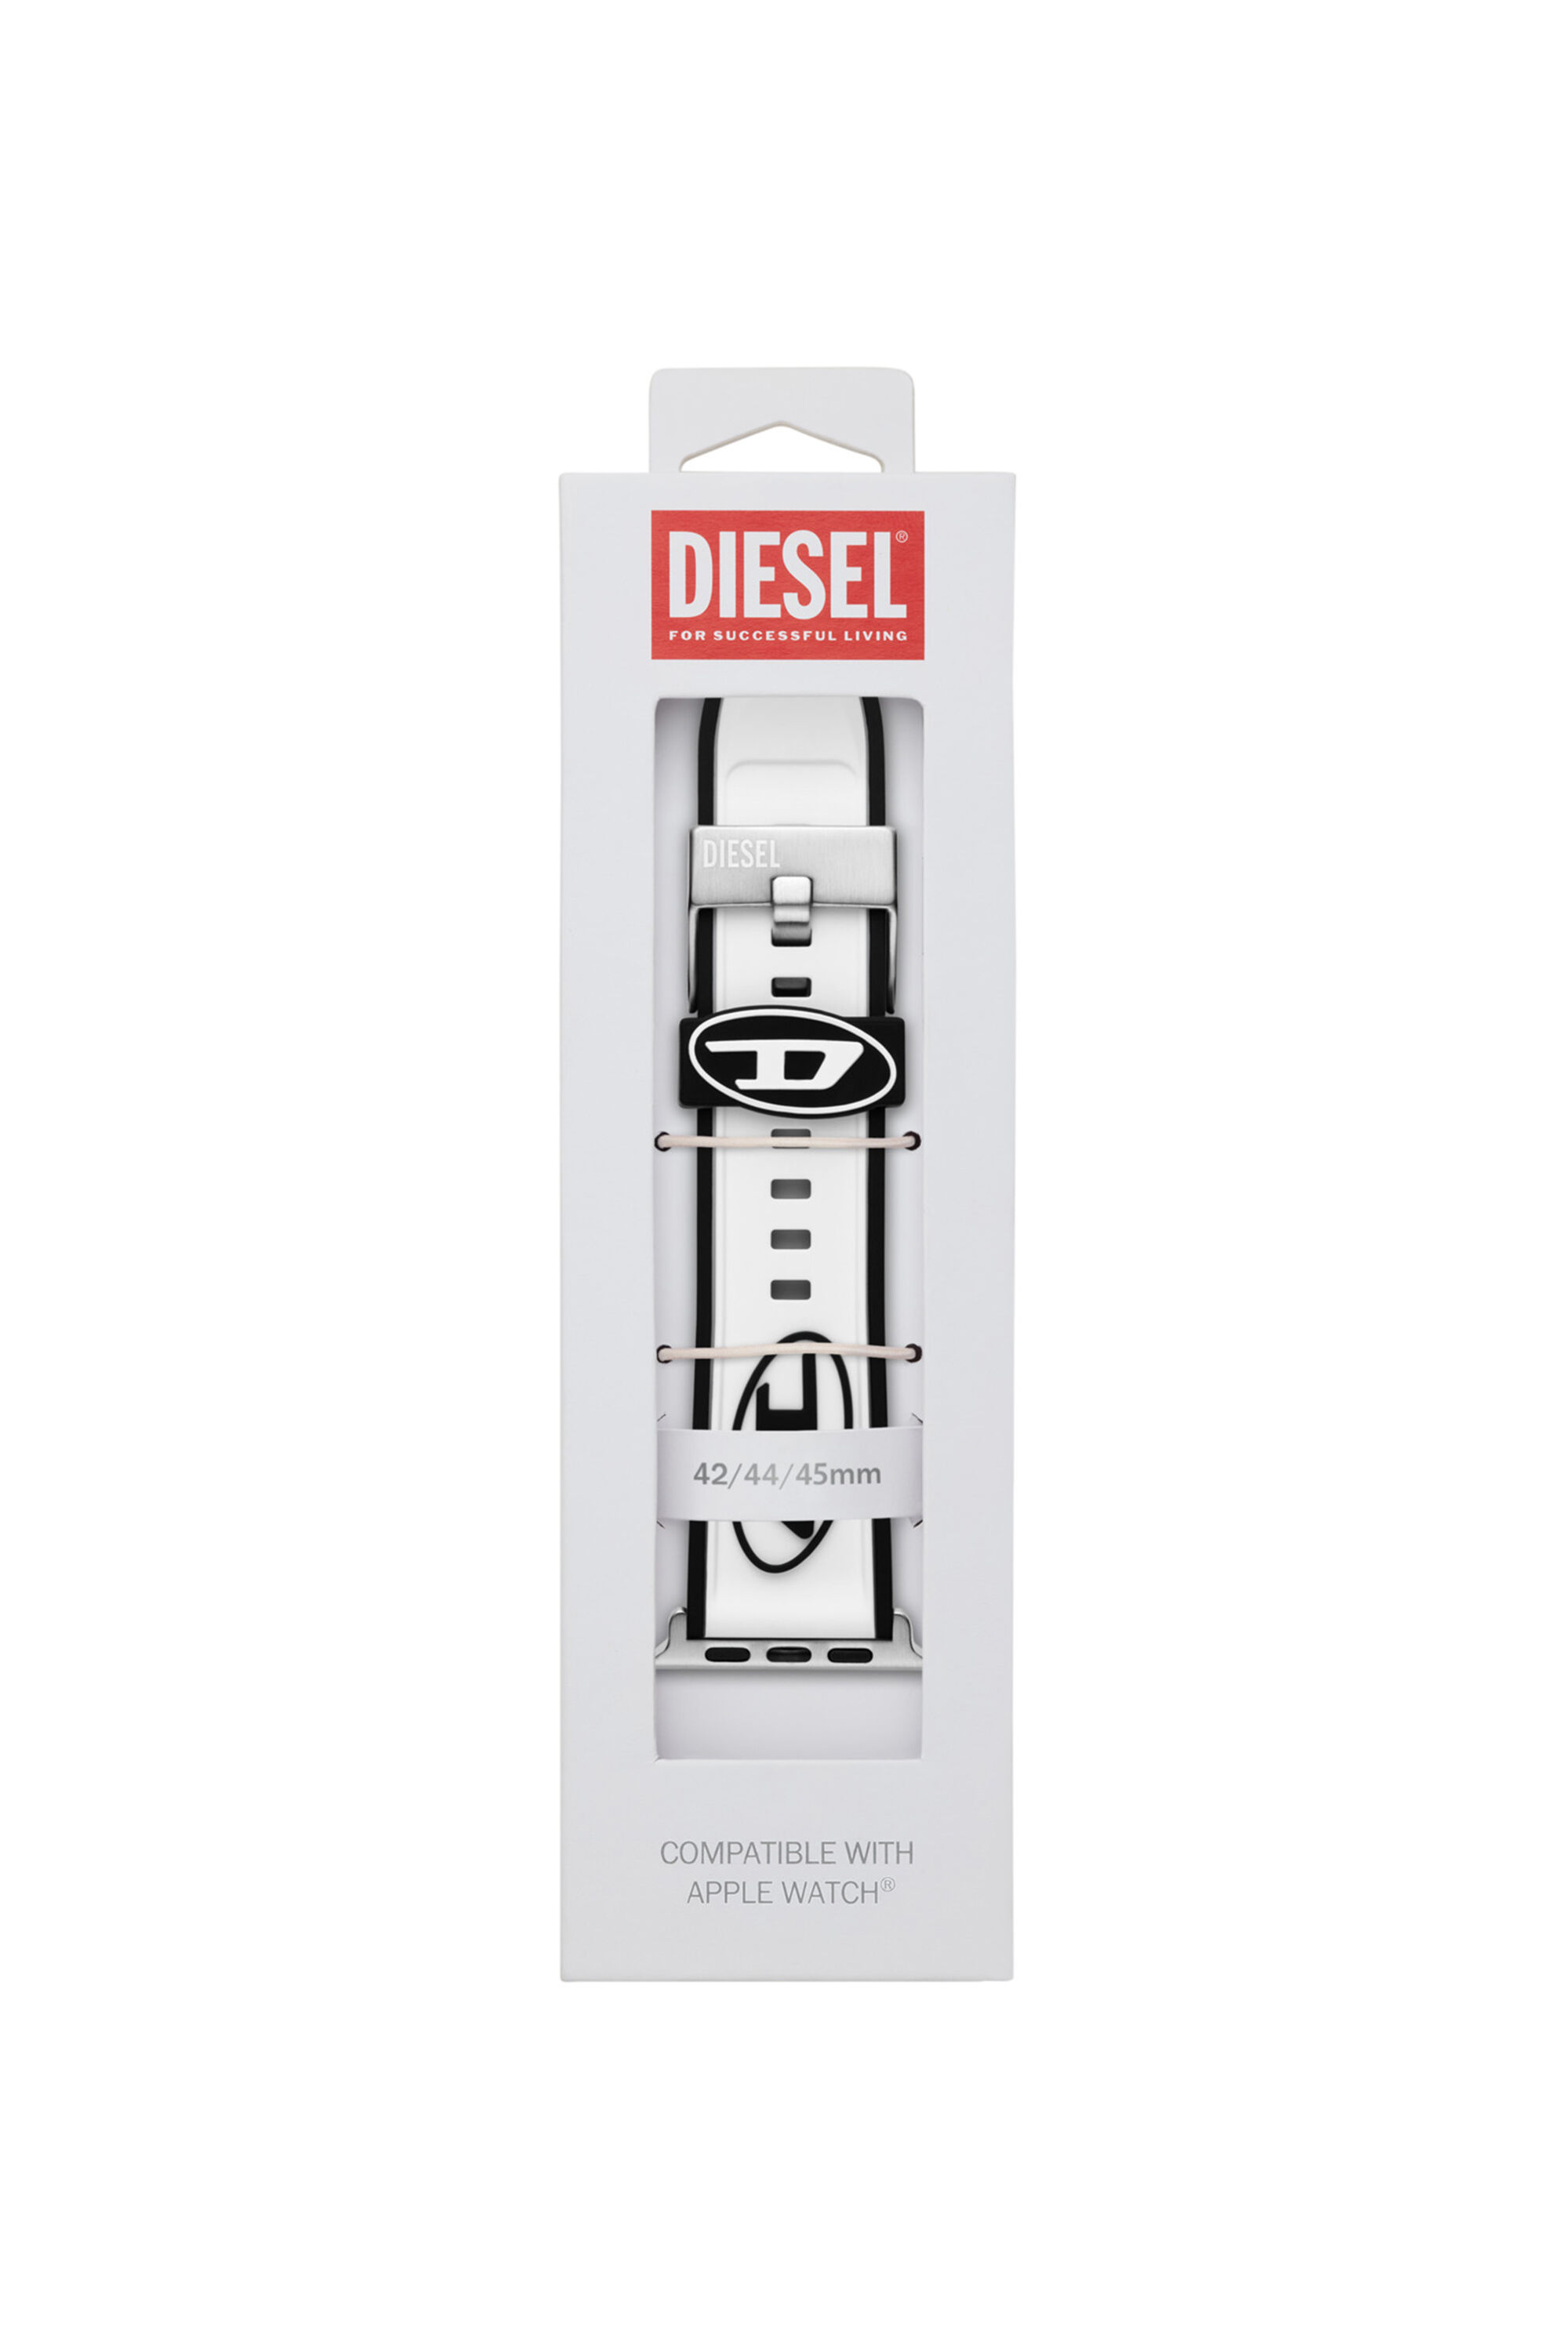 Diesel - DSS009, Blanc - Image 2